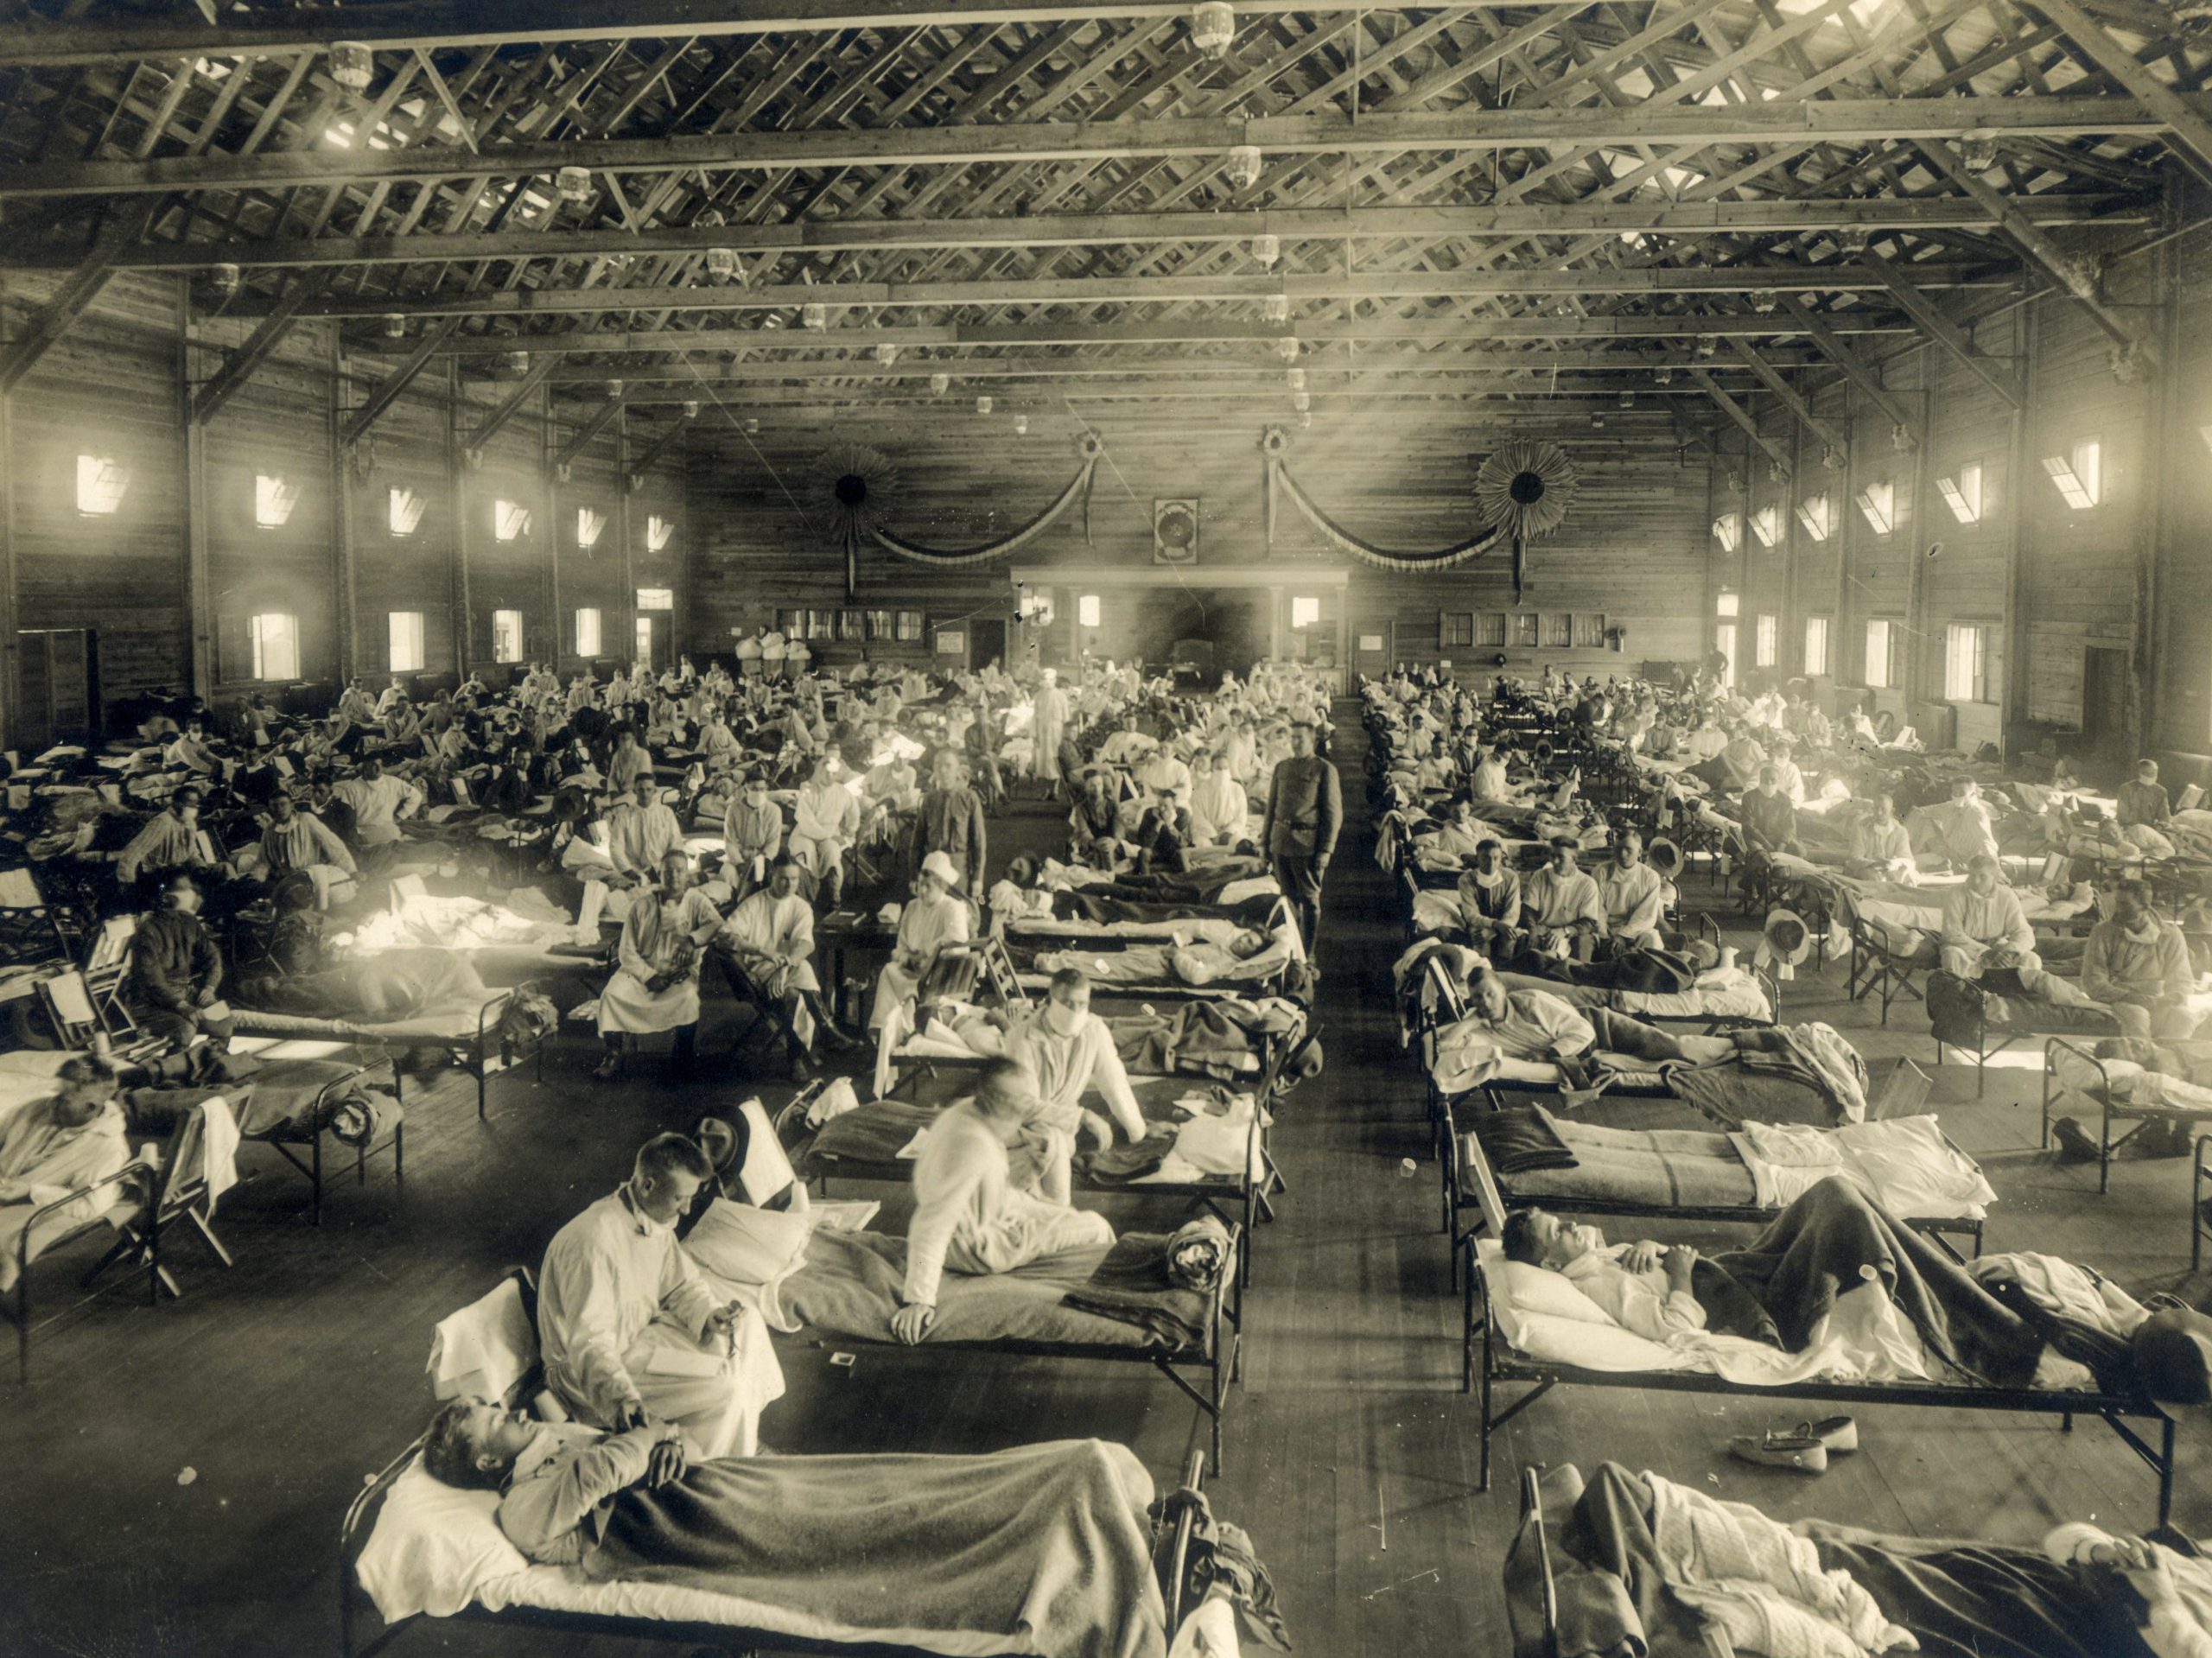 1918influenzaepidemic